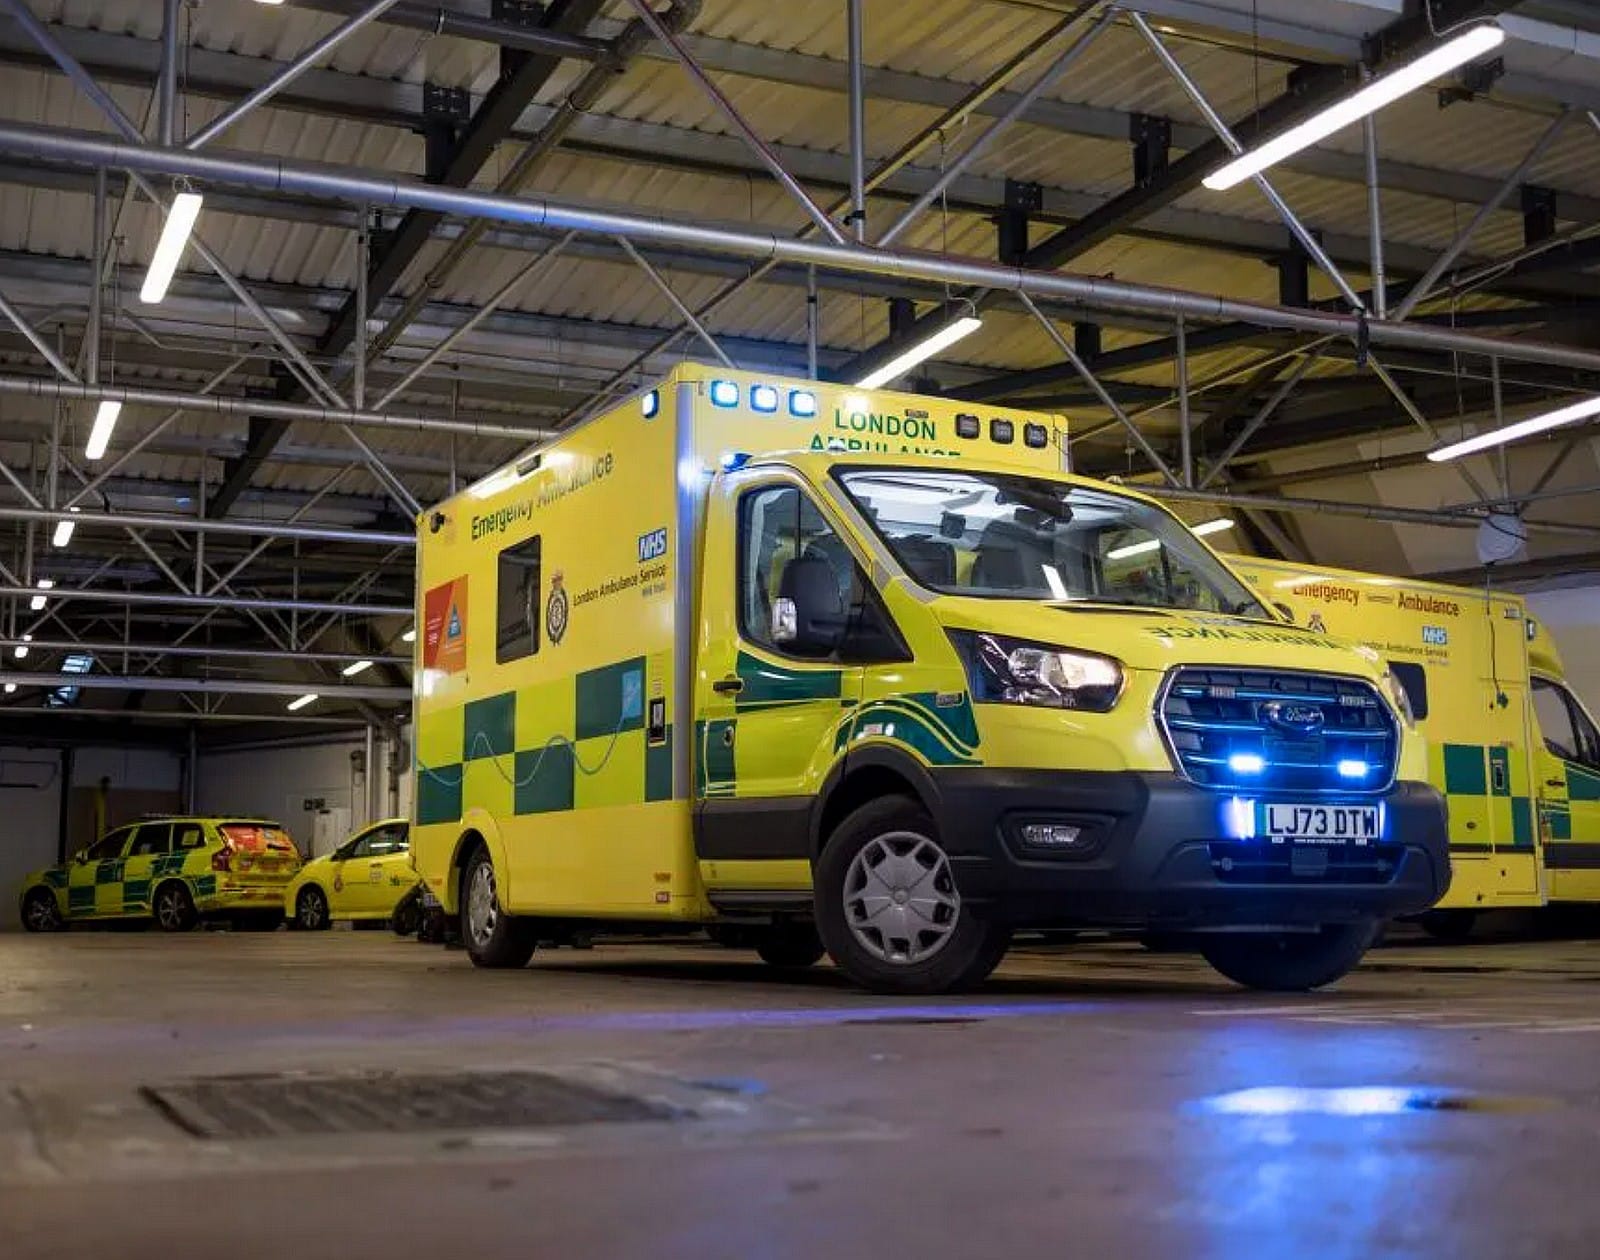 Des ambulances électriques pour les secours de Londres